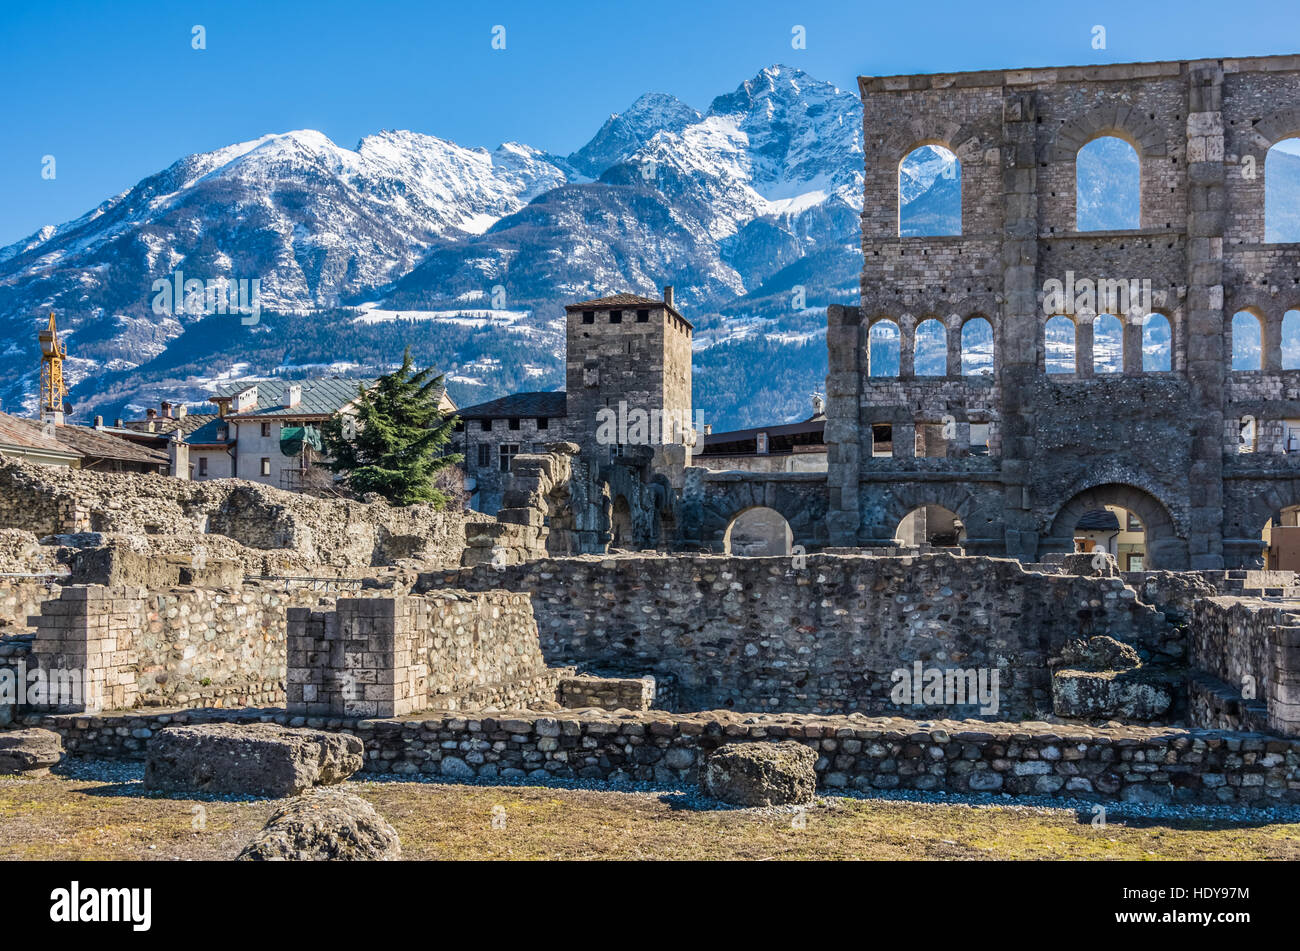 Le rovine romane in Aosta Foto Stock